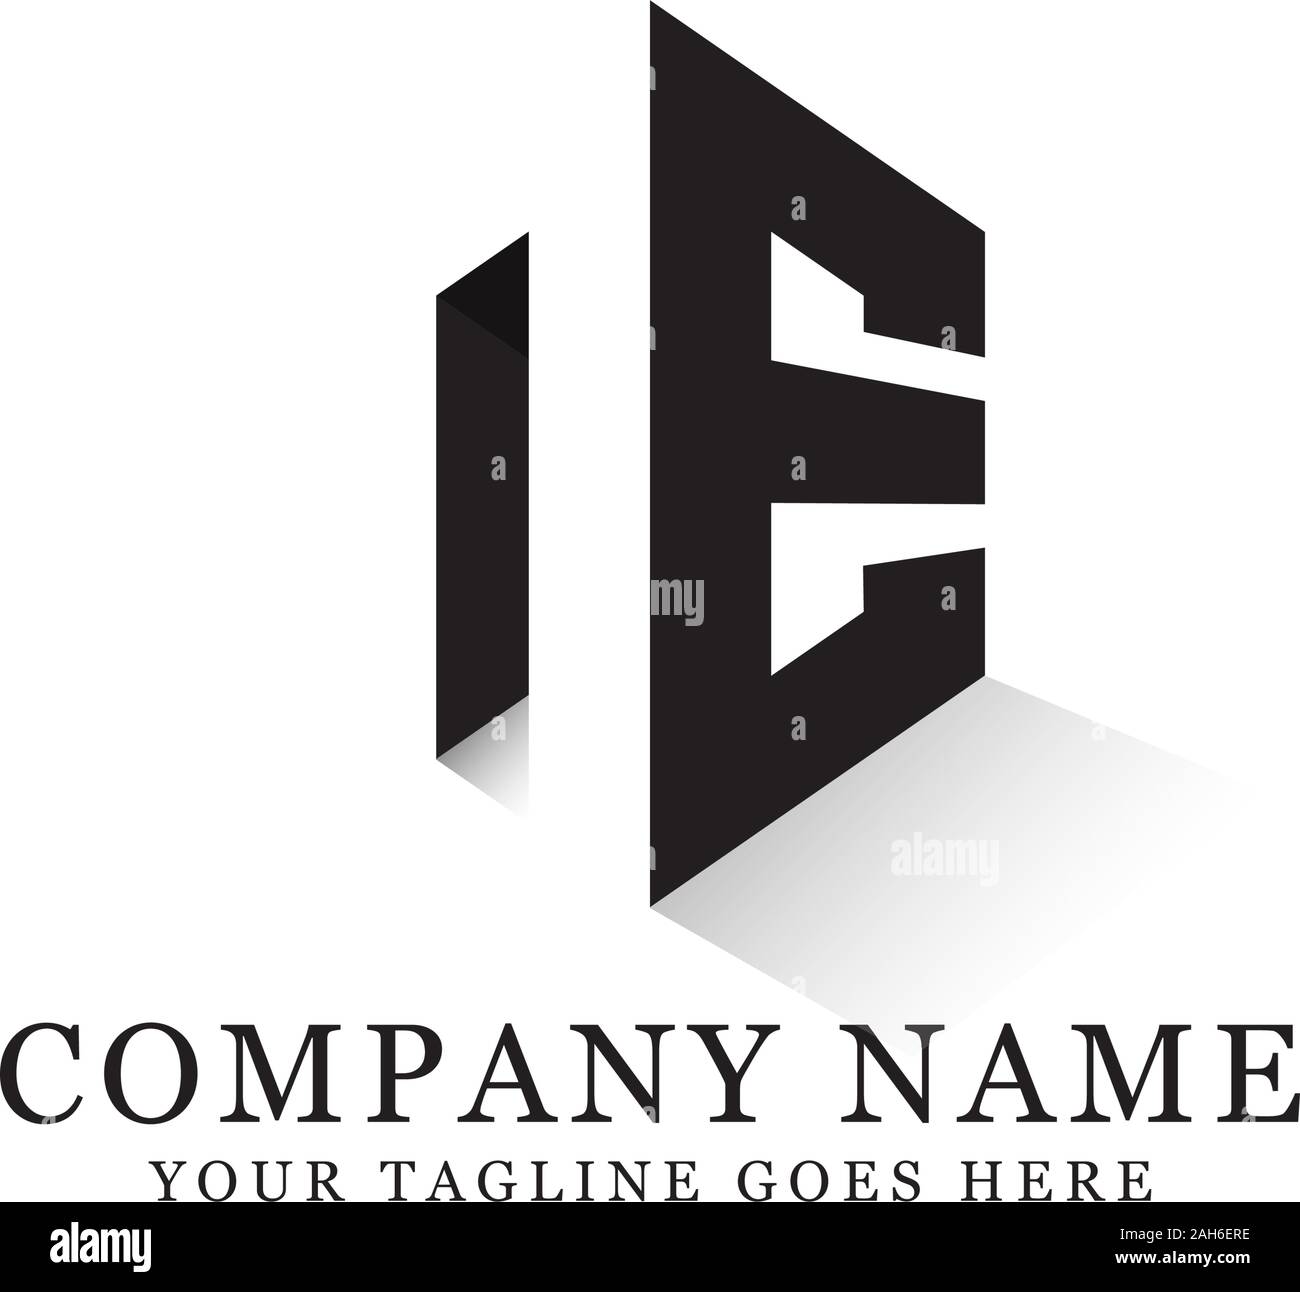 NE initial logo designs, hexagonal logo template, creative logo inspiration Stock Vector